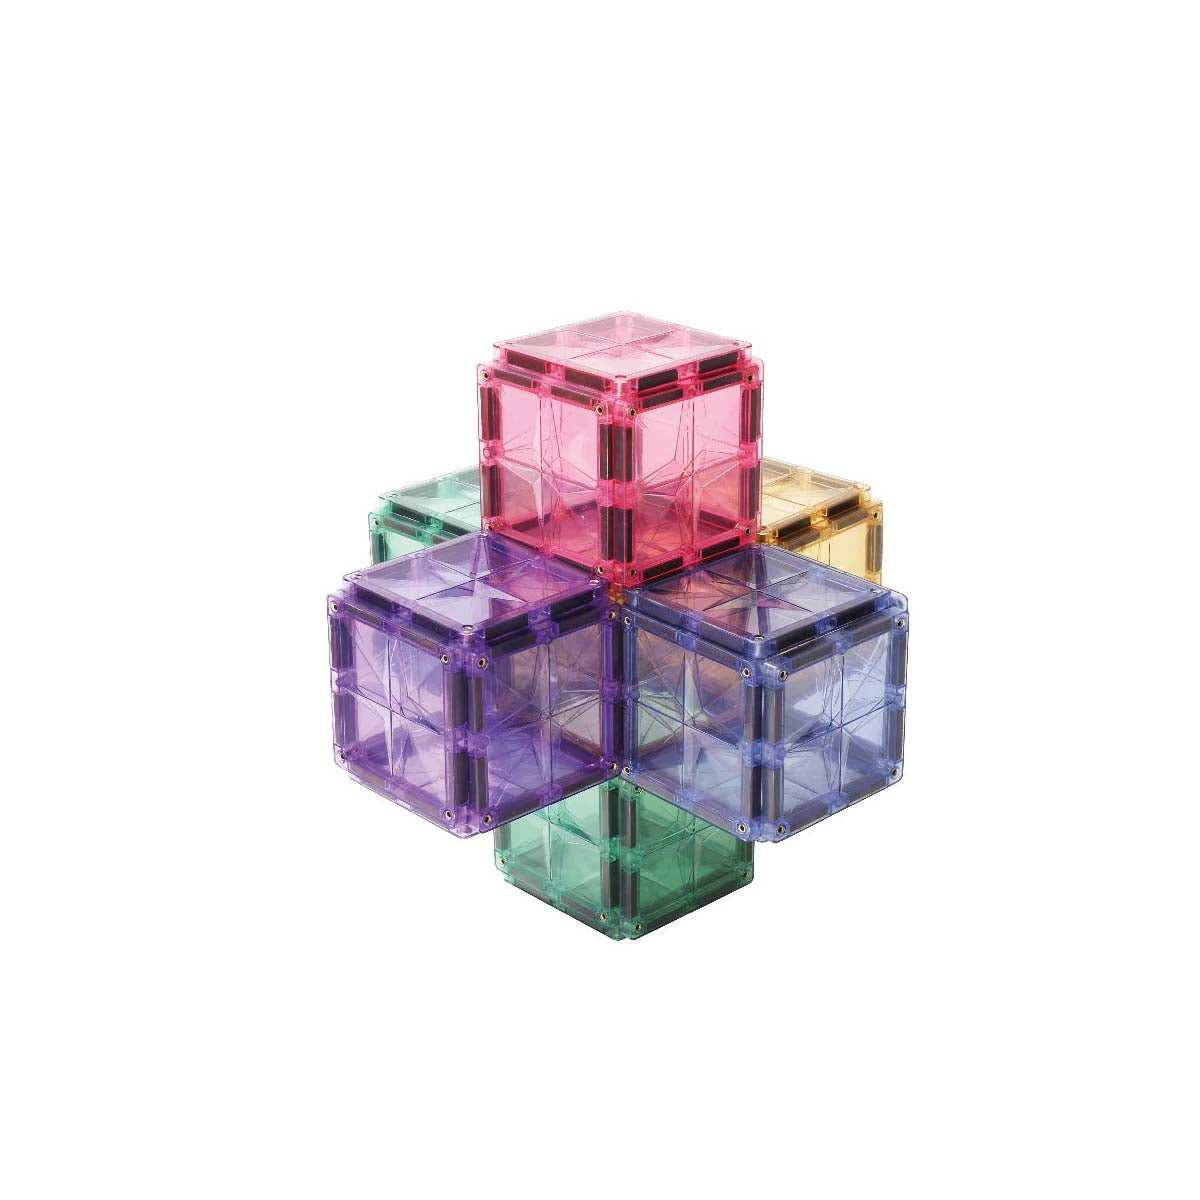 De Cleverclixx petite pack pastel 36 stuks is de perfecte set voor iedereen die de wondere wereld van magnetisch bouwen wil ontdekken. Met dit open einde speelgoed zijn de mogelijkheden eindeloos. VanZus.